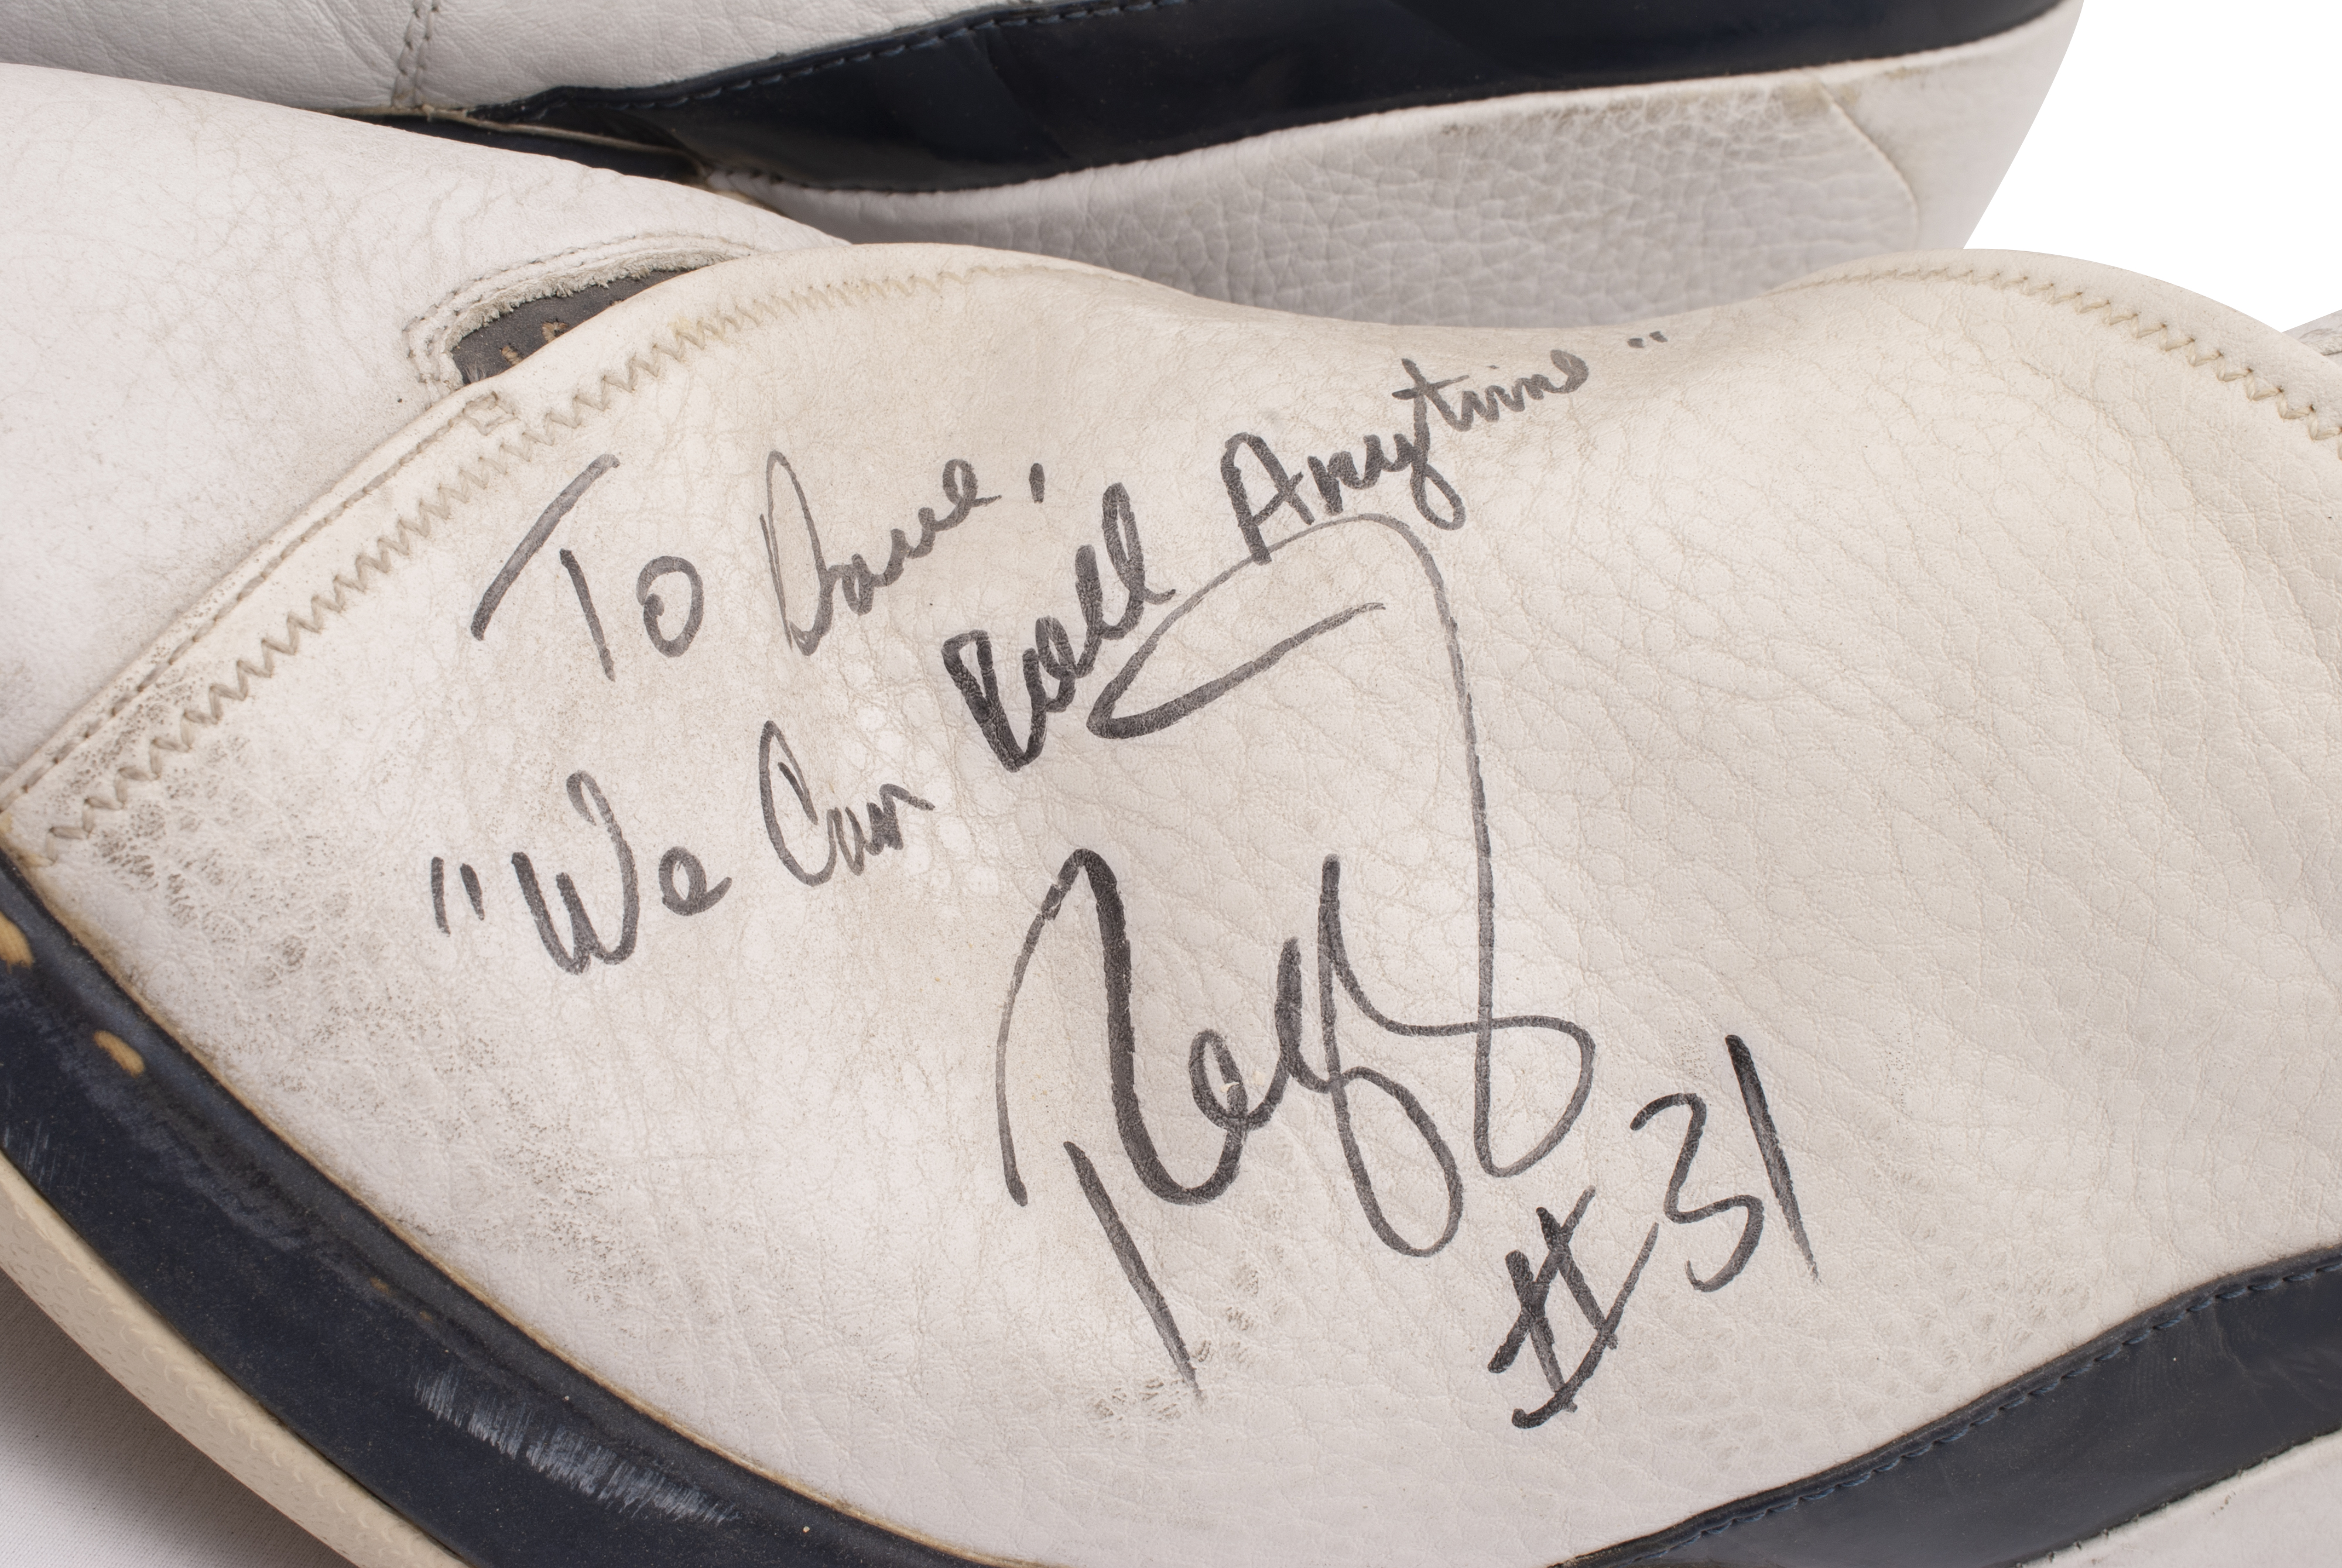 Reggie Miller 2003 Indiana Pacers Game Worn & Signed Air Jordan Sneakers, VICTORIAM, PART II, 2023